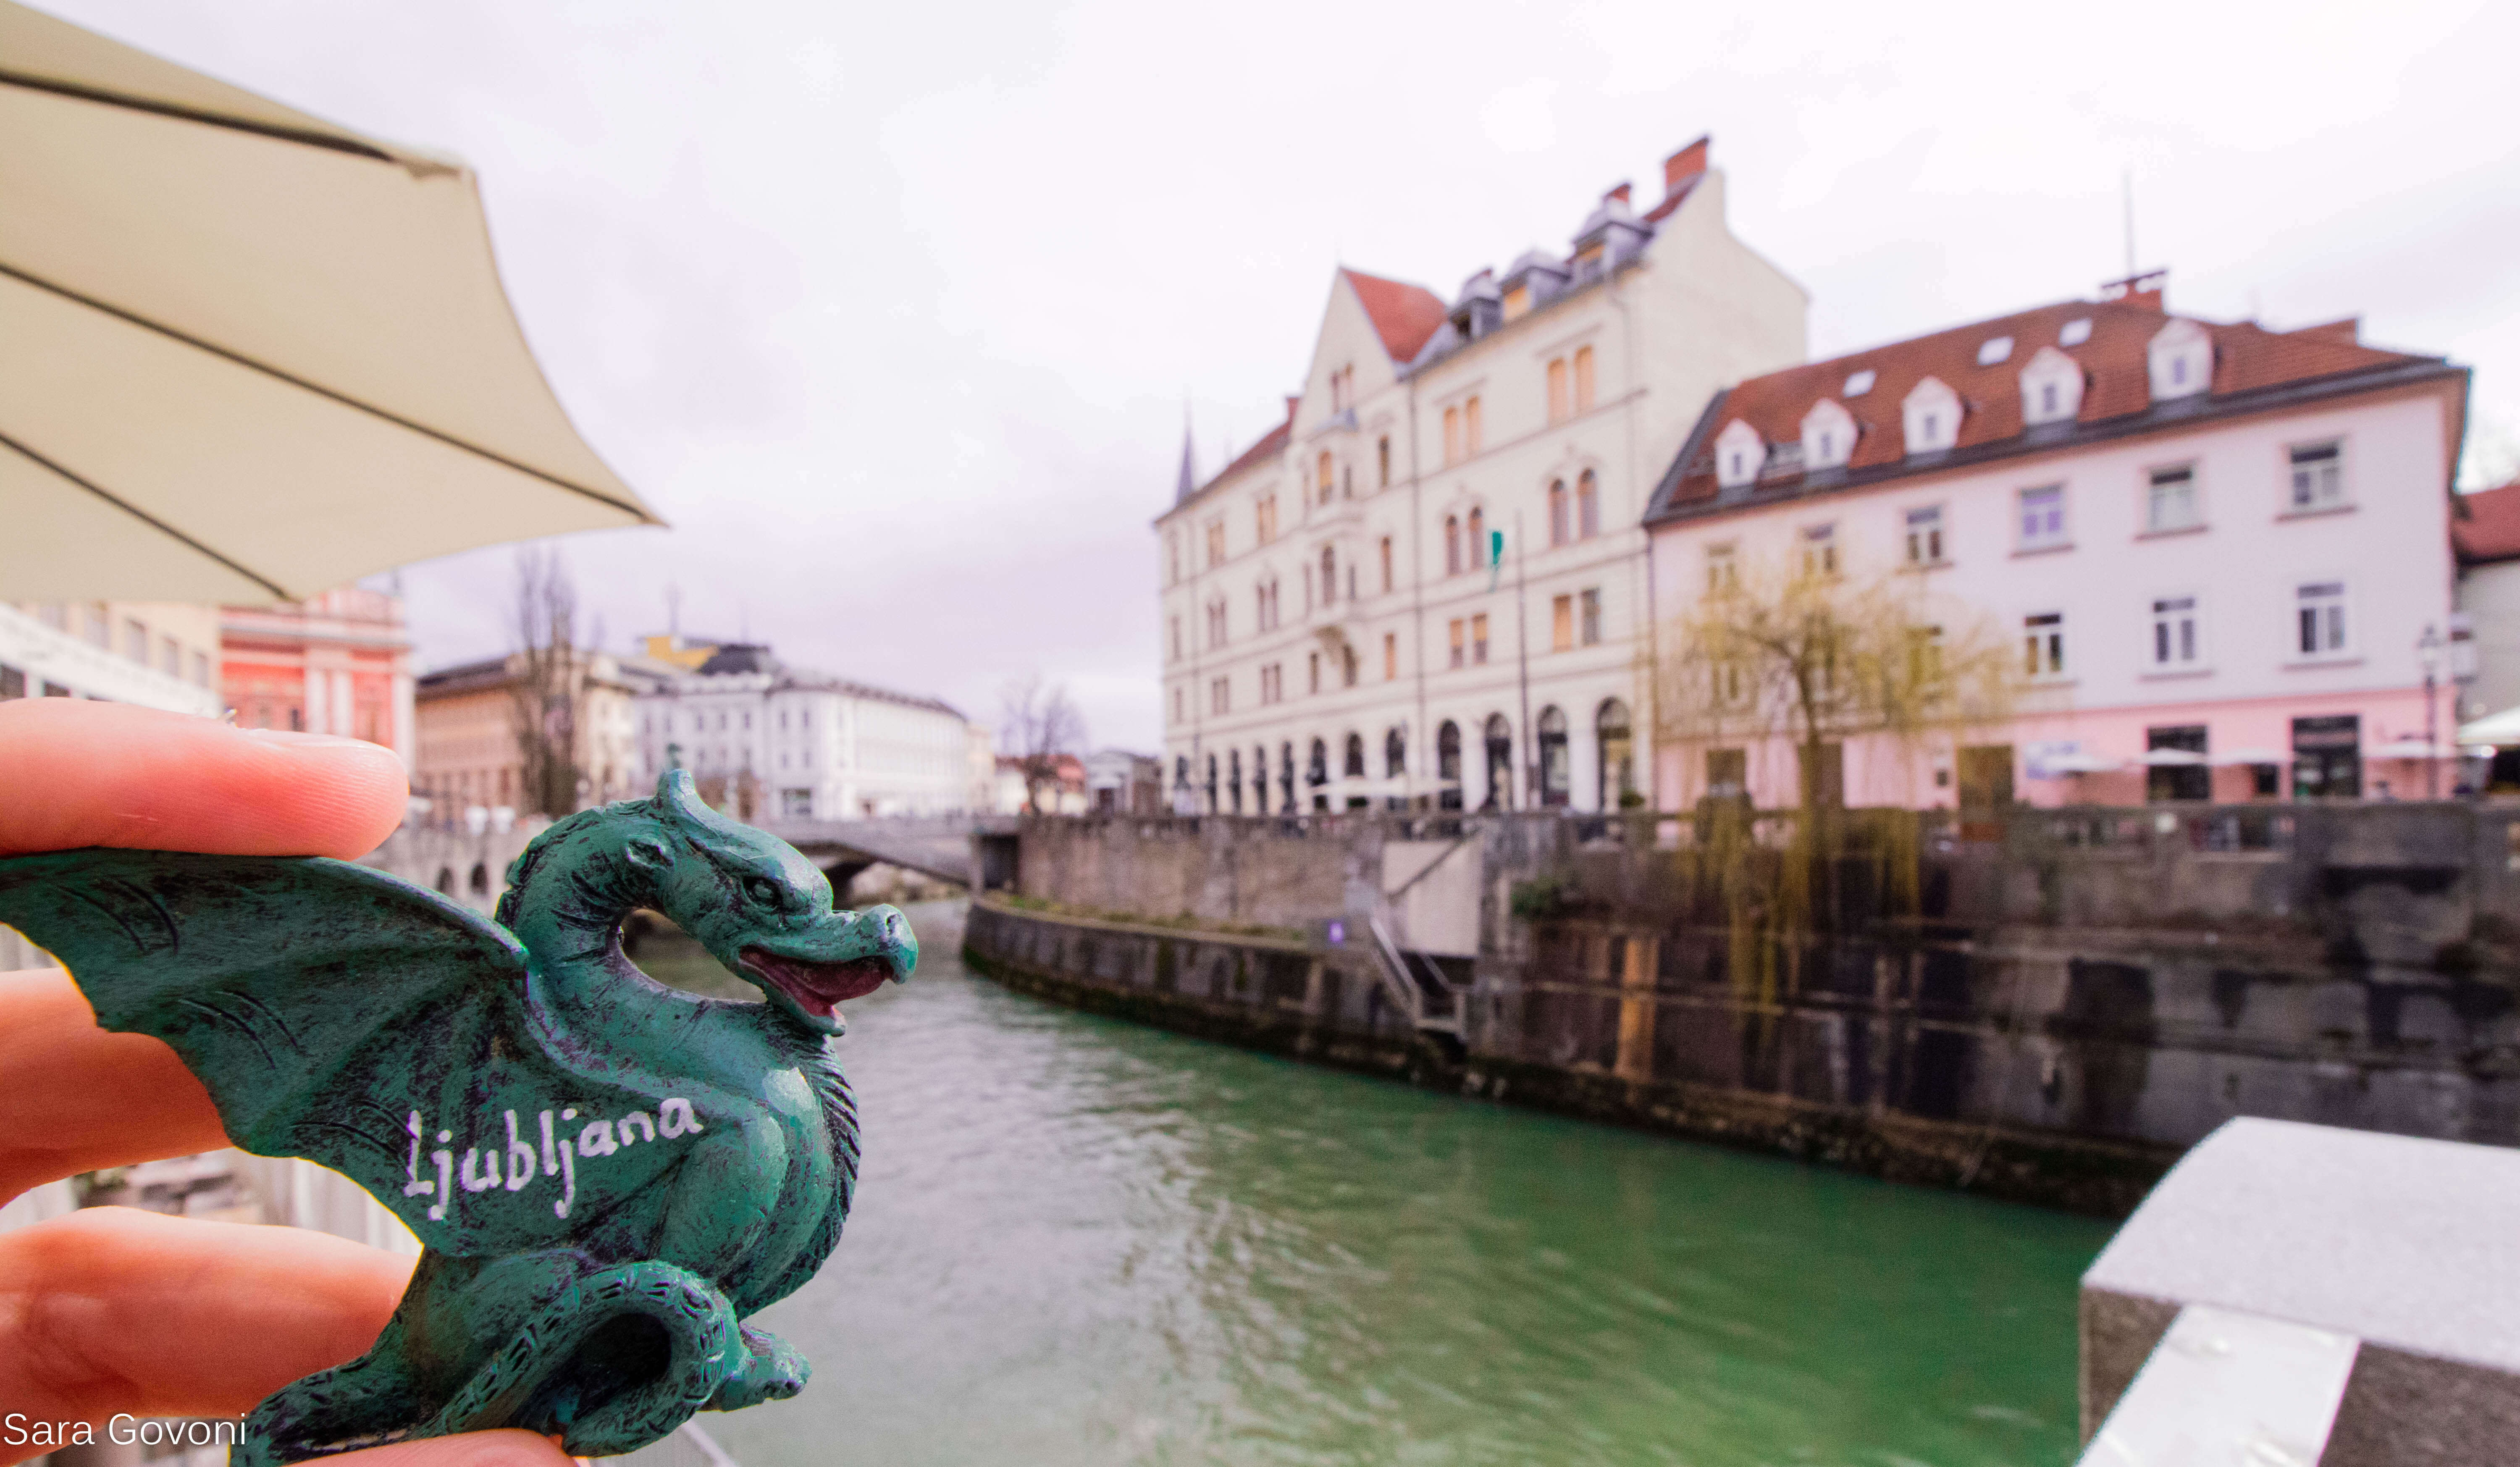 Visitare Lubiana: informazioni preliminari per un viaggio in Slovenia